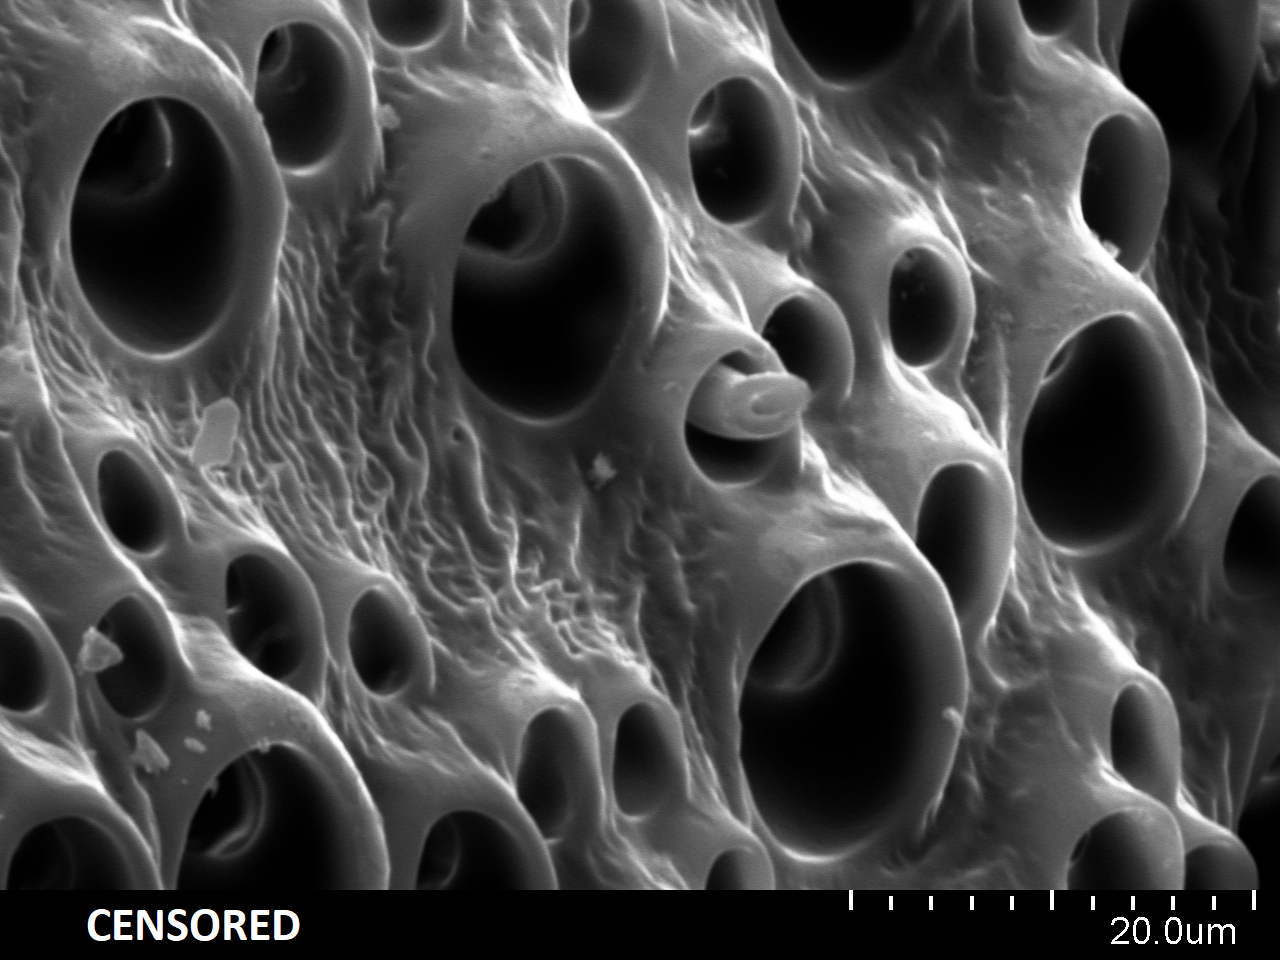 Увеличение 1600 крат микроскоп. Кровь под электронным микроскопом. Лапки бабочки под микроскопом. Лапки мотылька под микроскопом.